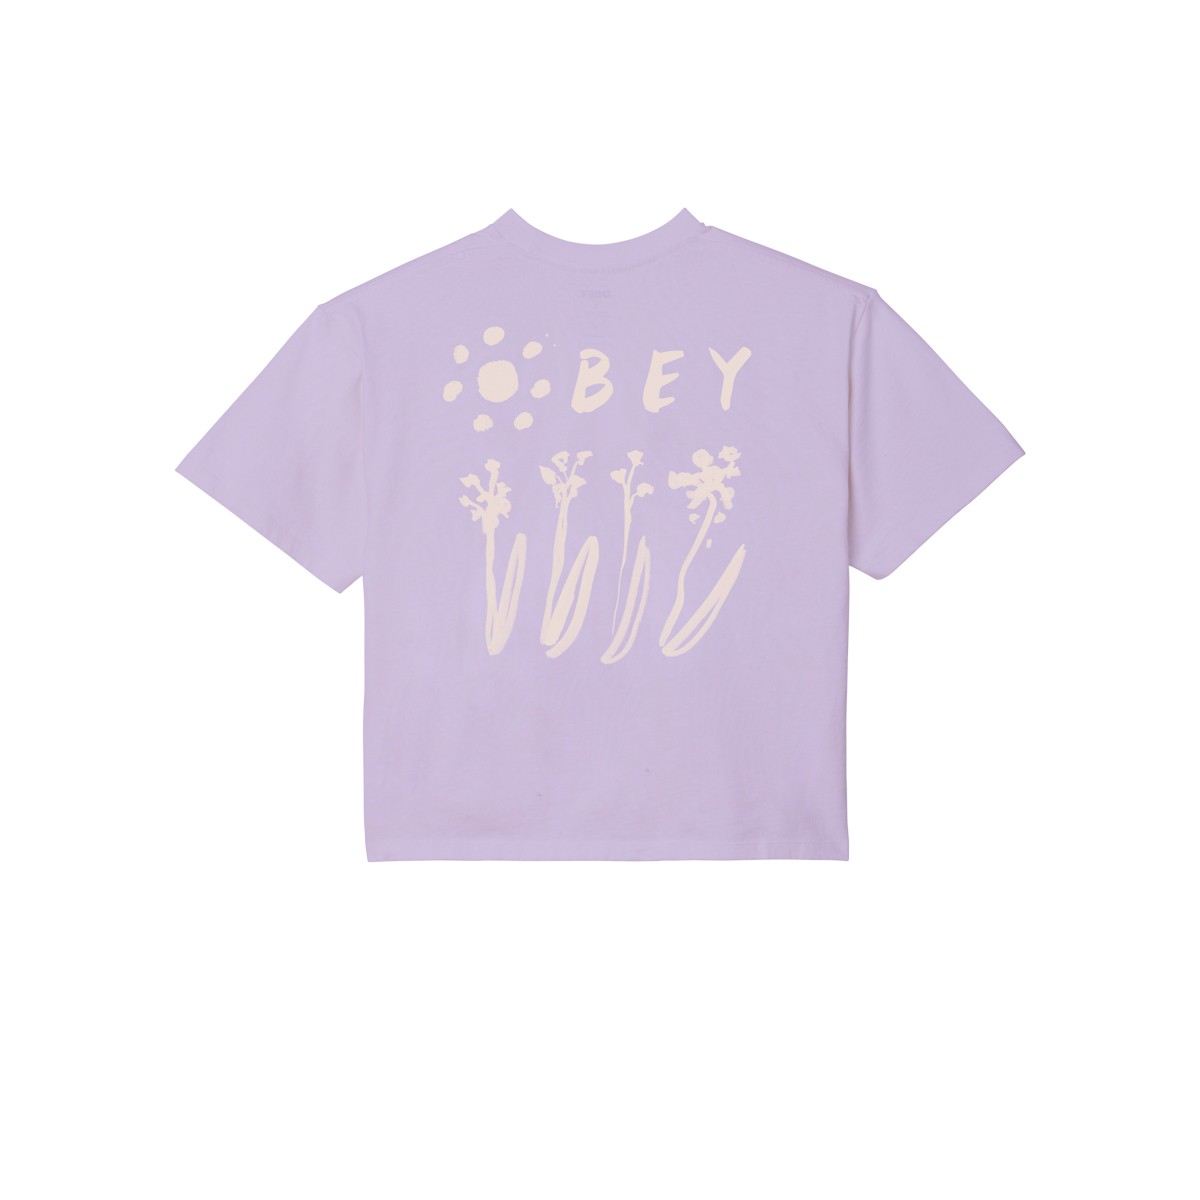 OBEY - T-shirt mauve imprimé